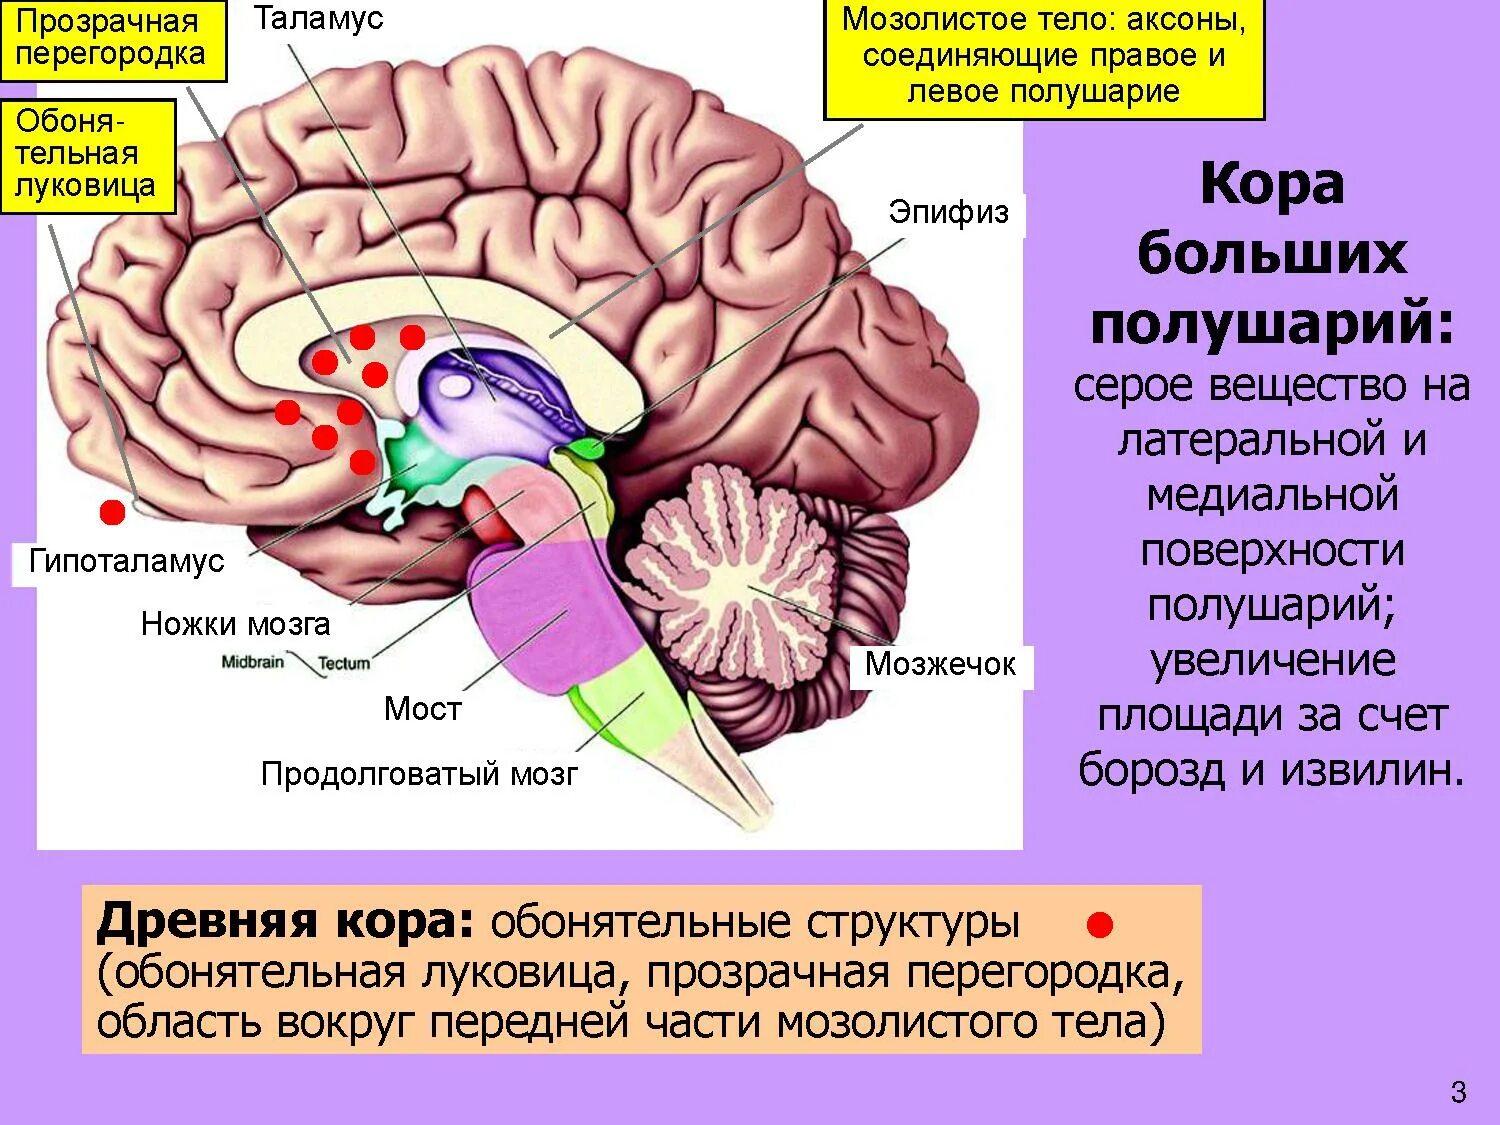 Мозолистое тело конечного мозга функции. Прозрачная перегородка мозга анатомия. Строение мозолистого тела головного мозга. Таламус, гипоталамус, мост, мозжечок, продолговатый мозг.. Древние отделы мозга человека